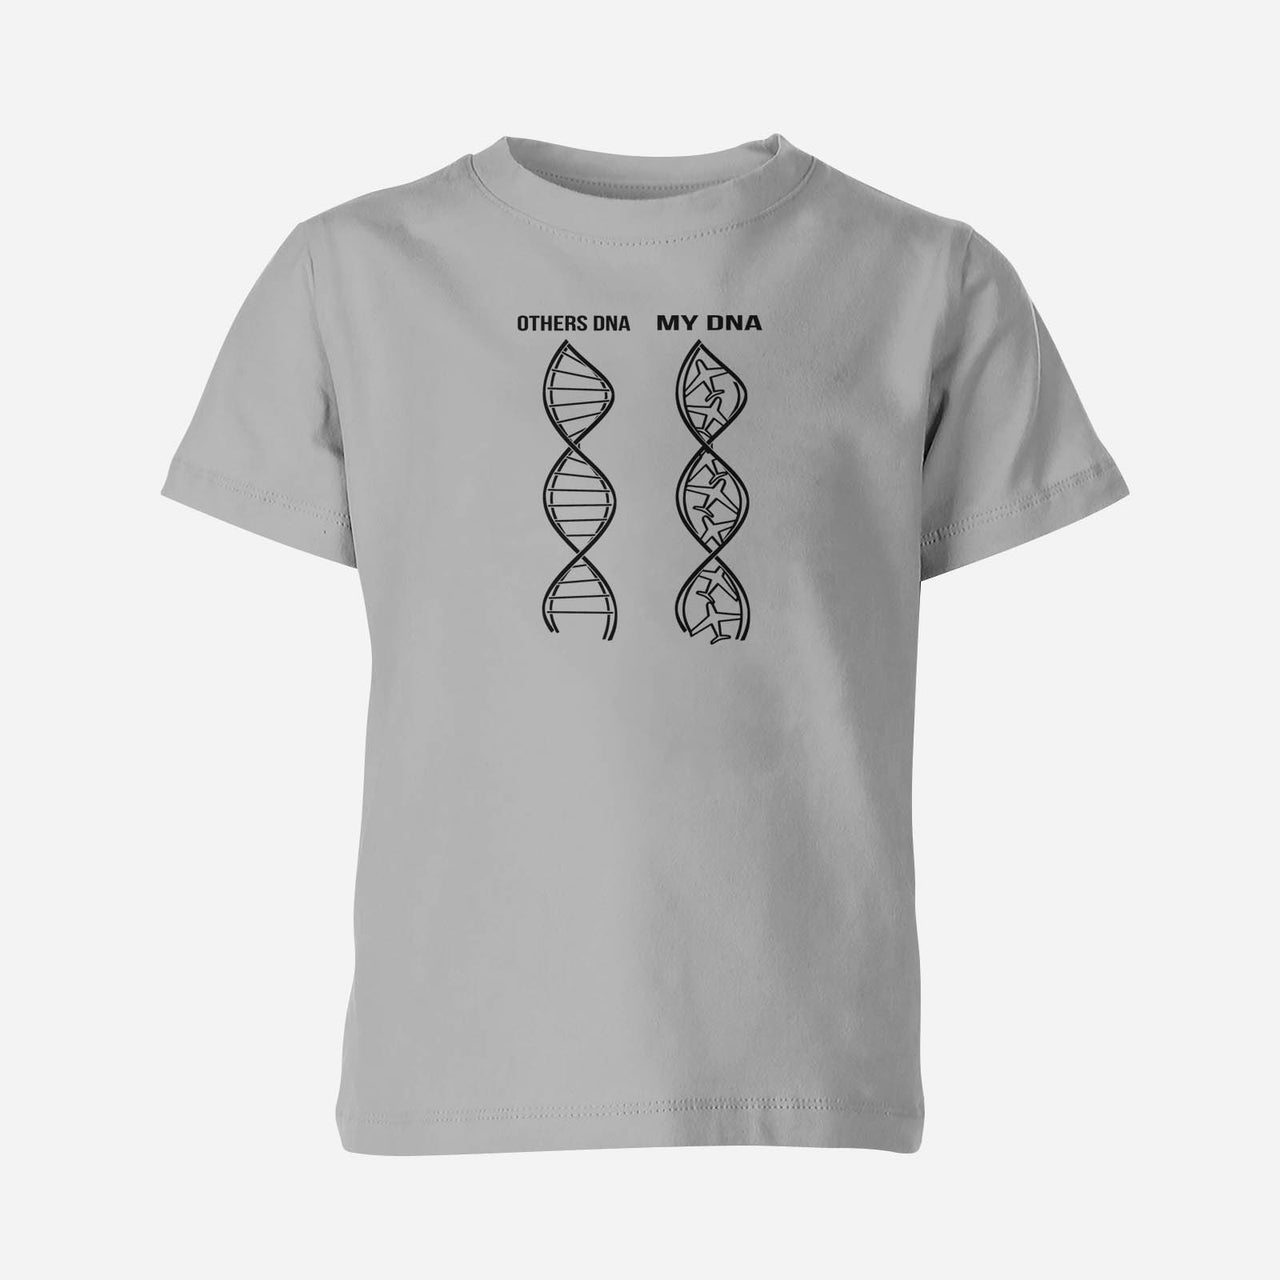 Aviation DNA Designed Children T-Shirts